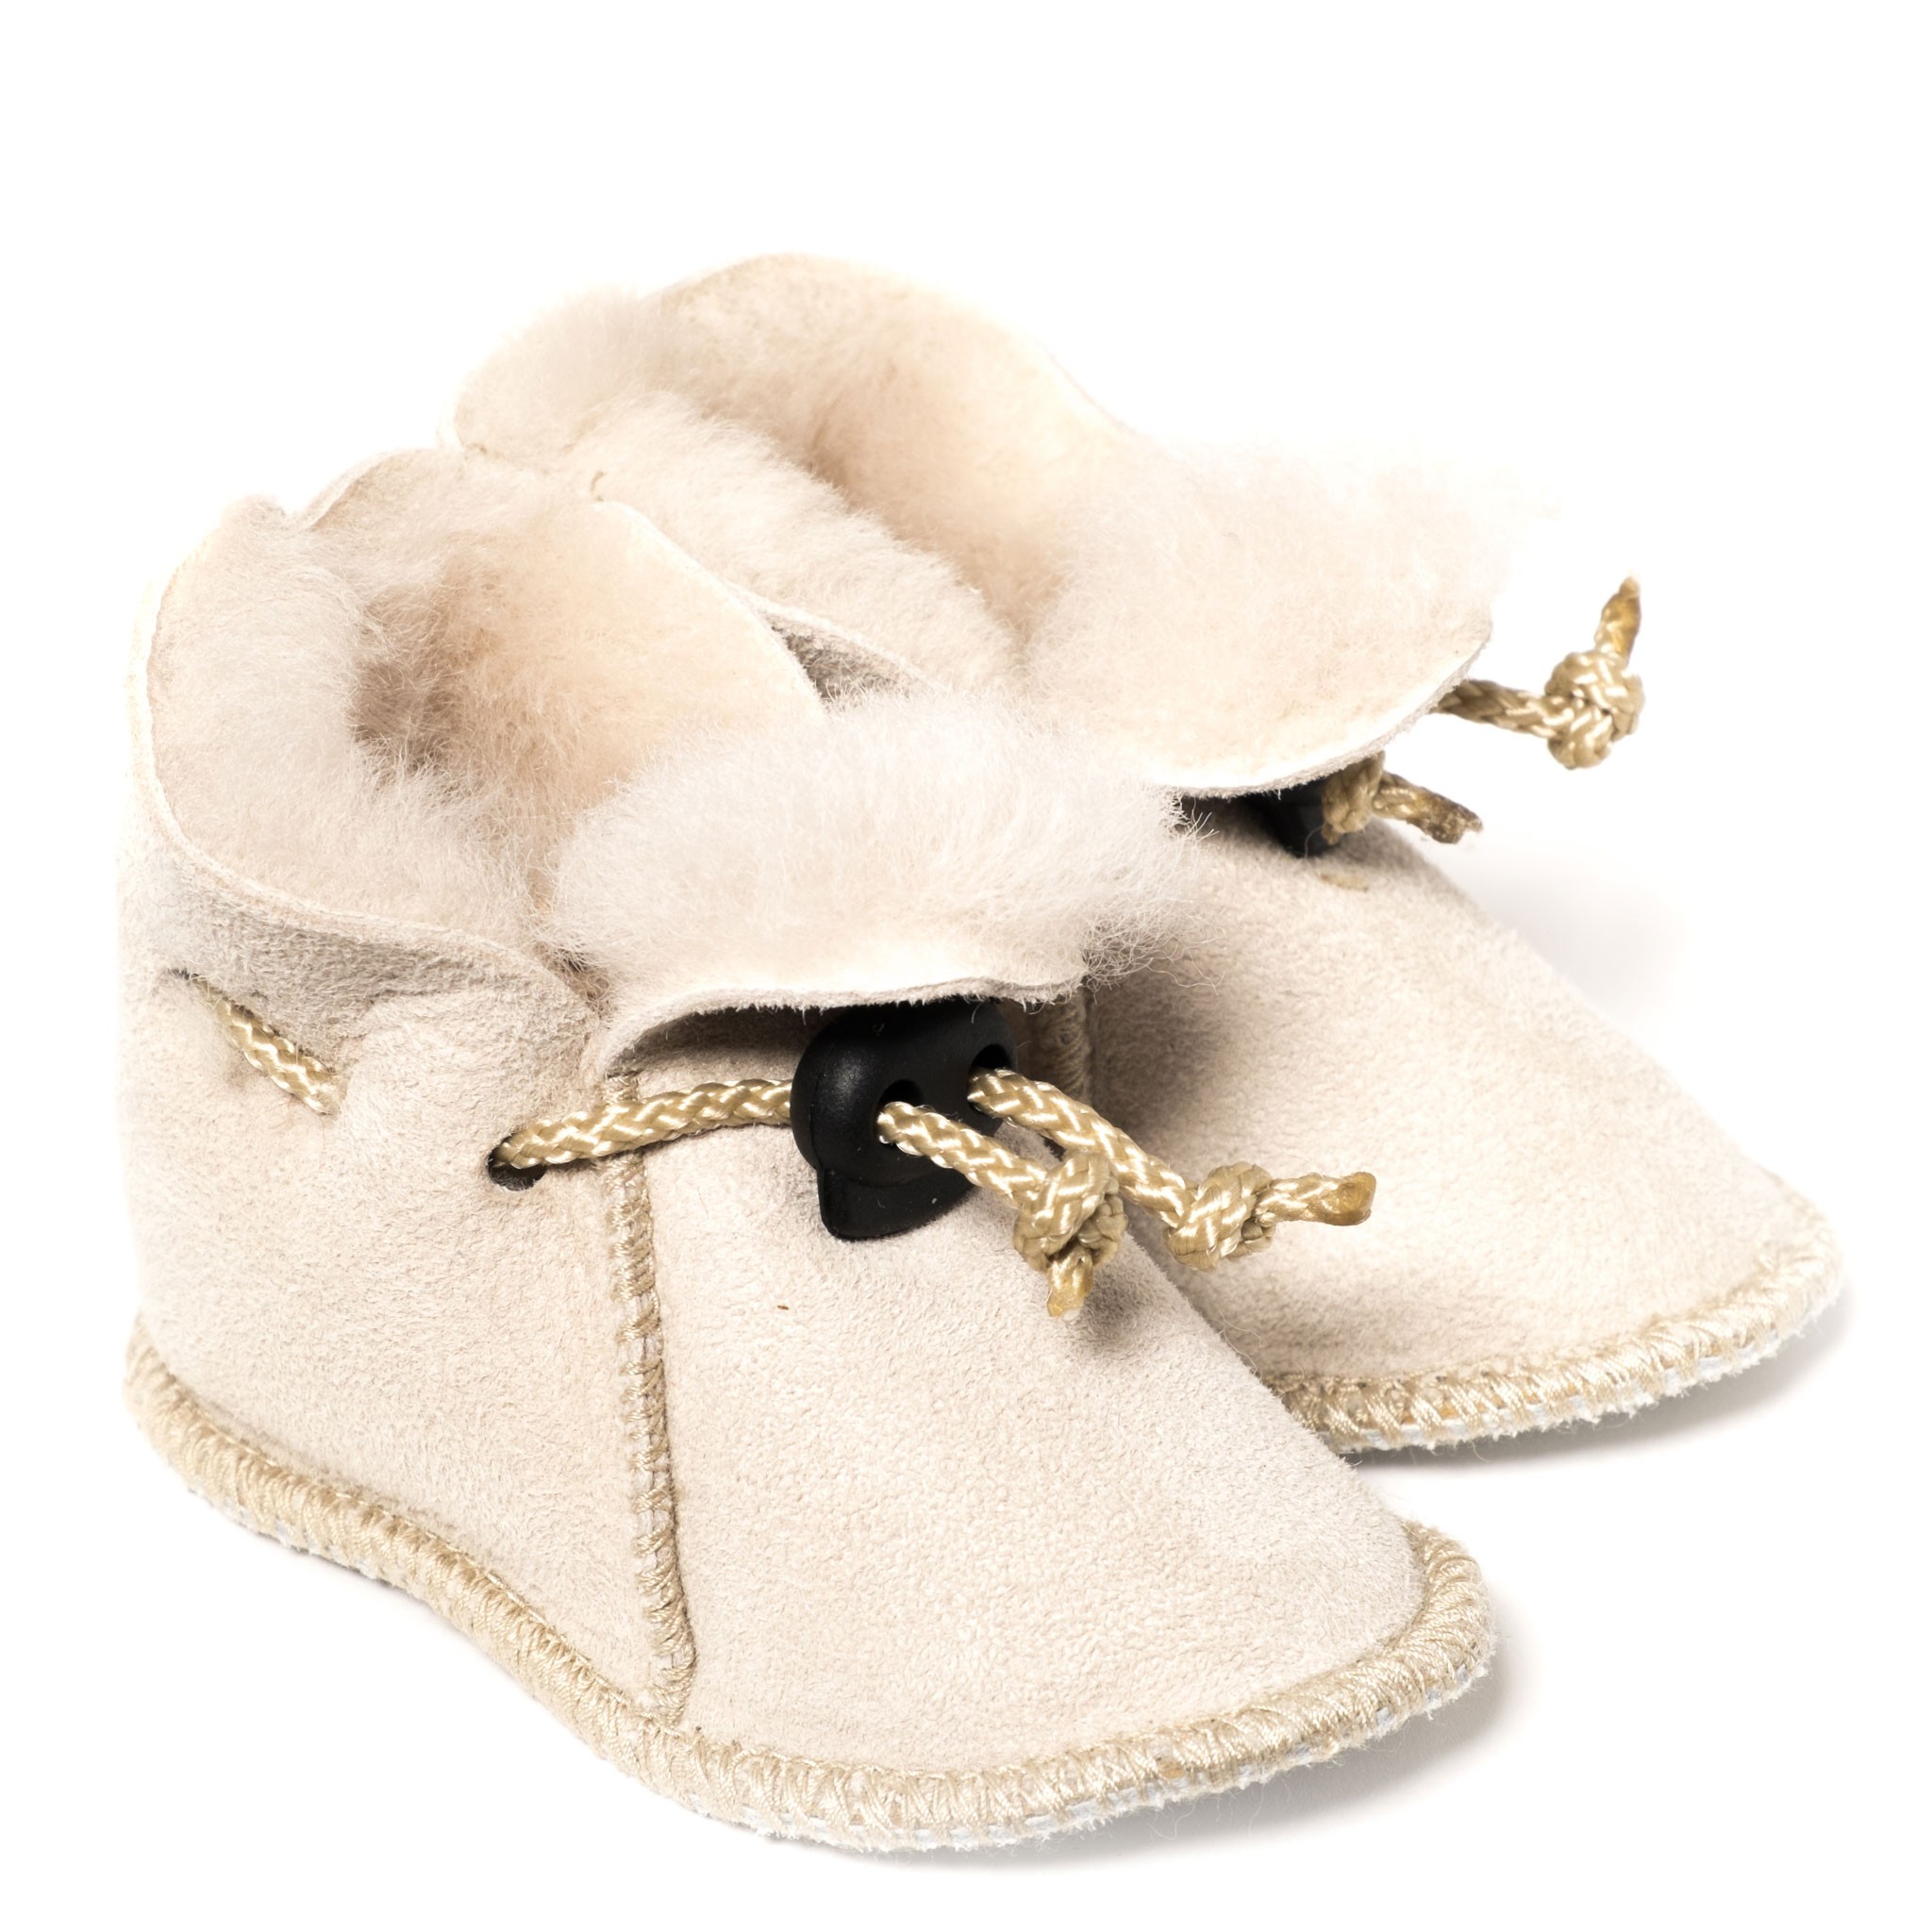 DX-Exclusive Wear Chaussons en peau d/'agneau pour bébé chaussons bébé ADB-0001 pour fille garçon fermeture velcro bottes fourrure véritable cuir